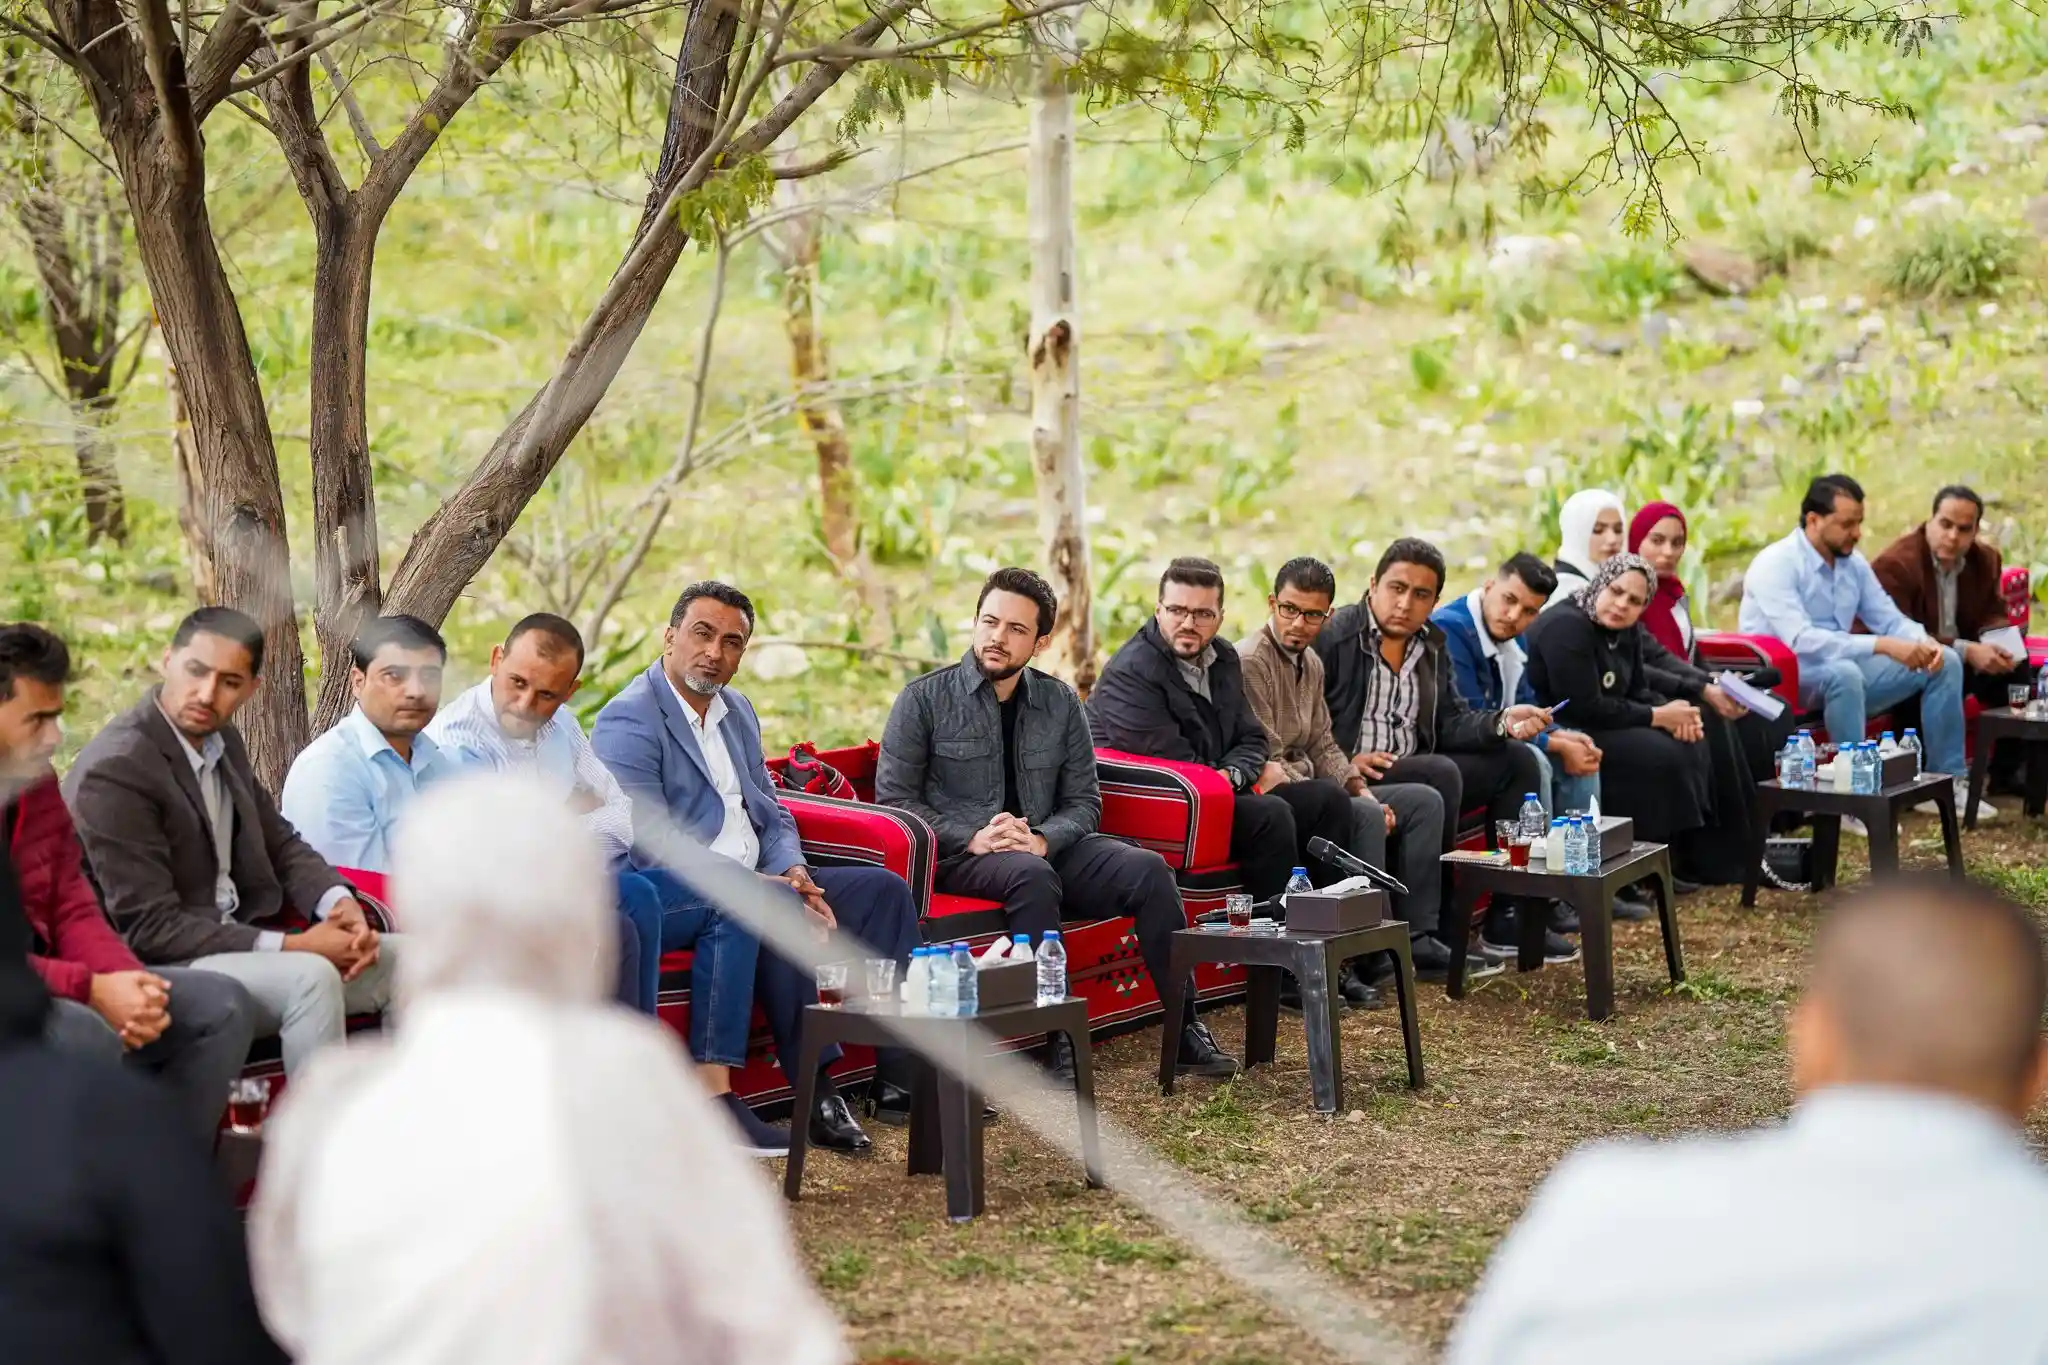 ولي العهد يلتقي شبابا ناشطين في الأغوار الشمالية (صور)